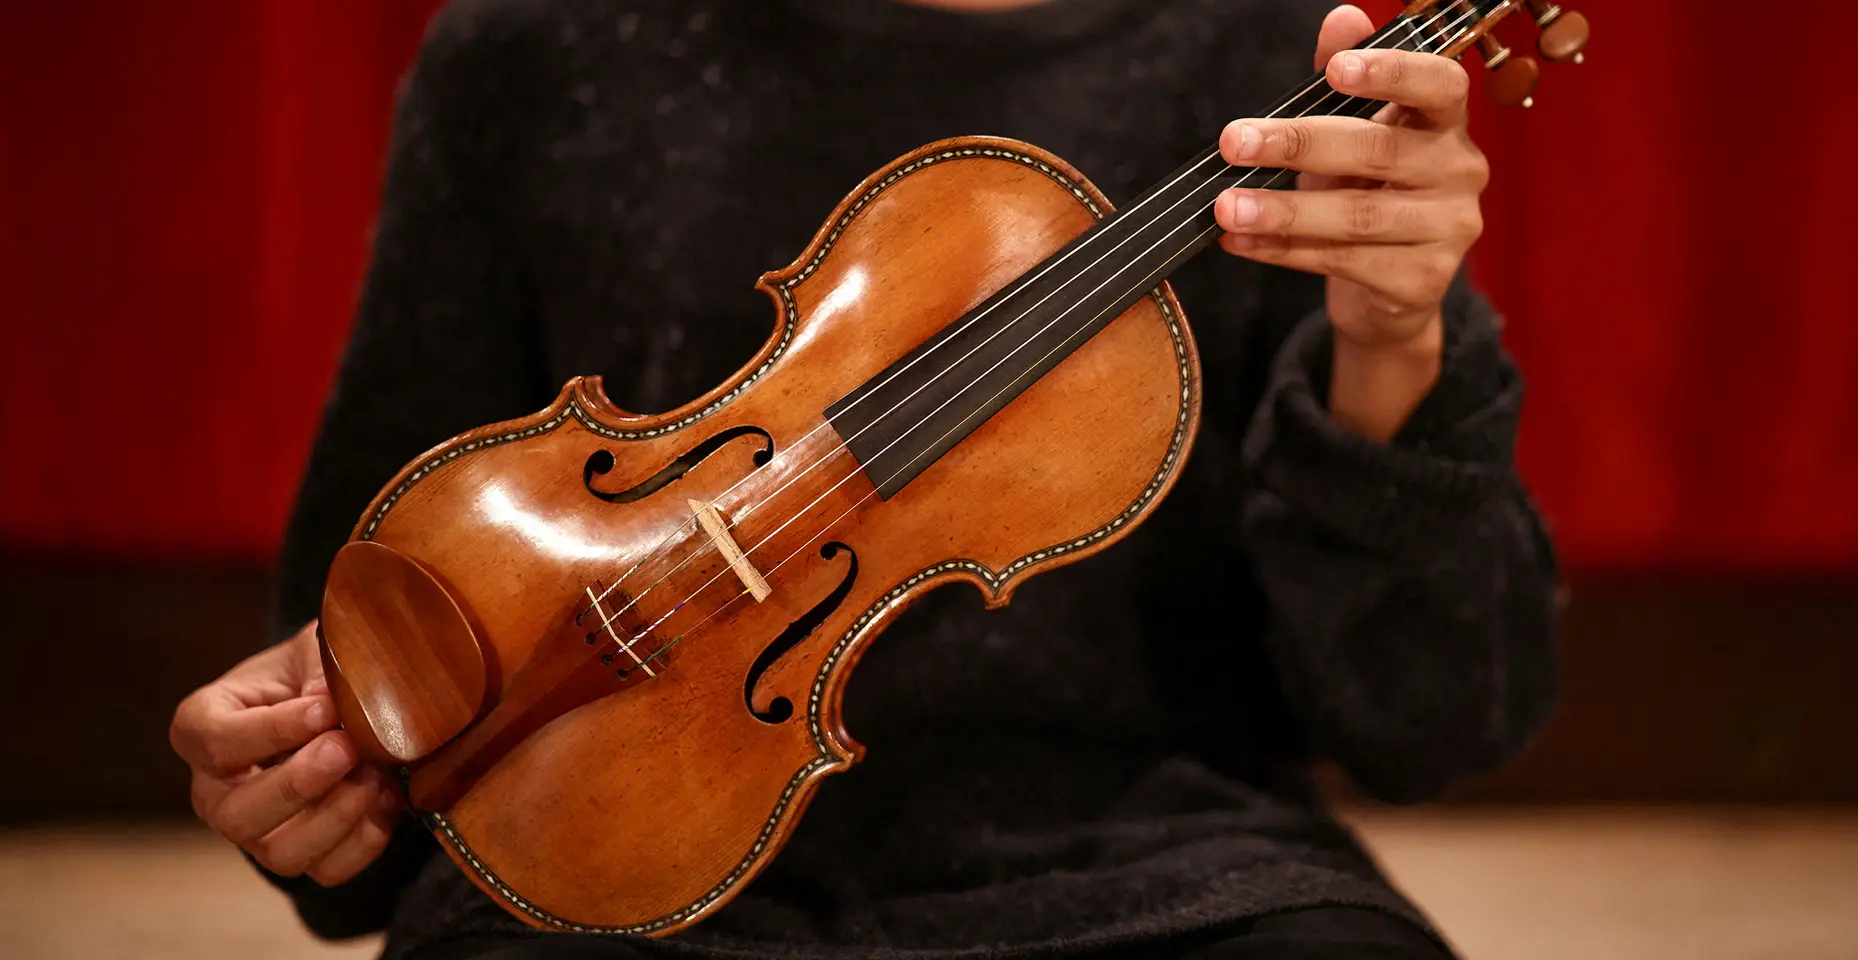 Oculto Geología Dispersión Un violín de 147 millones de pesos - Música en México